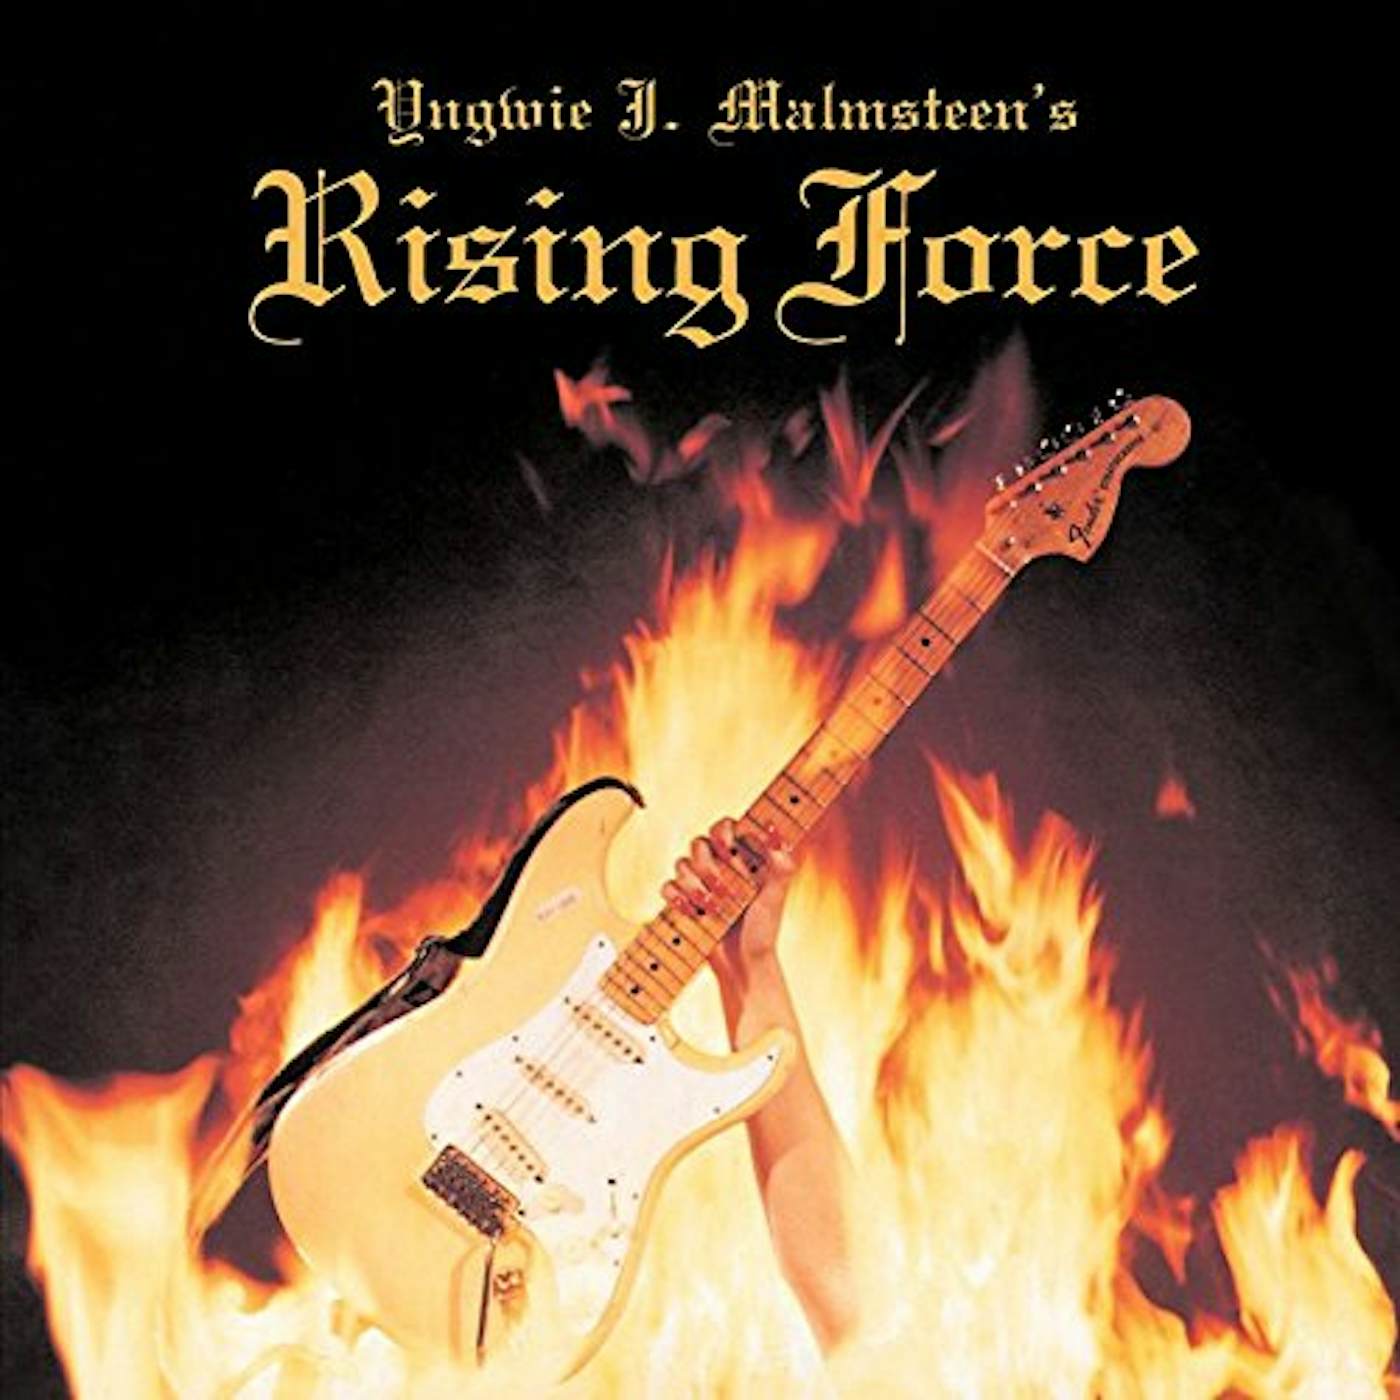 Yngwie Malmsteen YNGWIE J. MALMSTEEN'S RISING FORCE CD